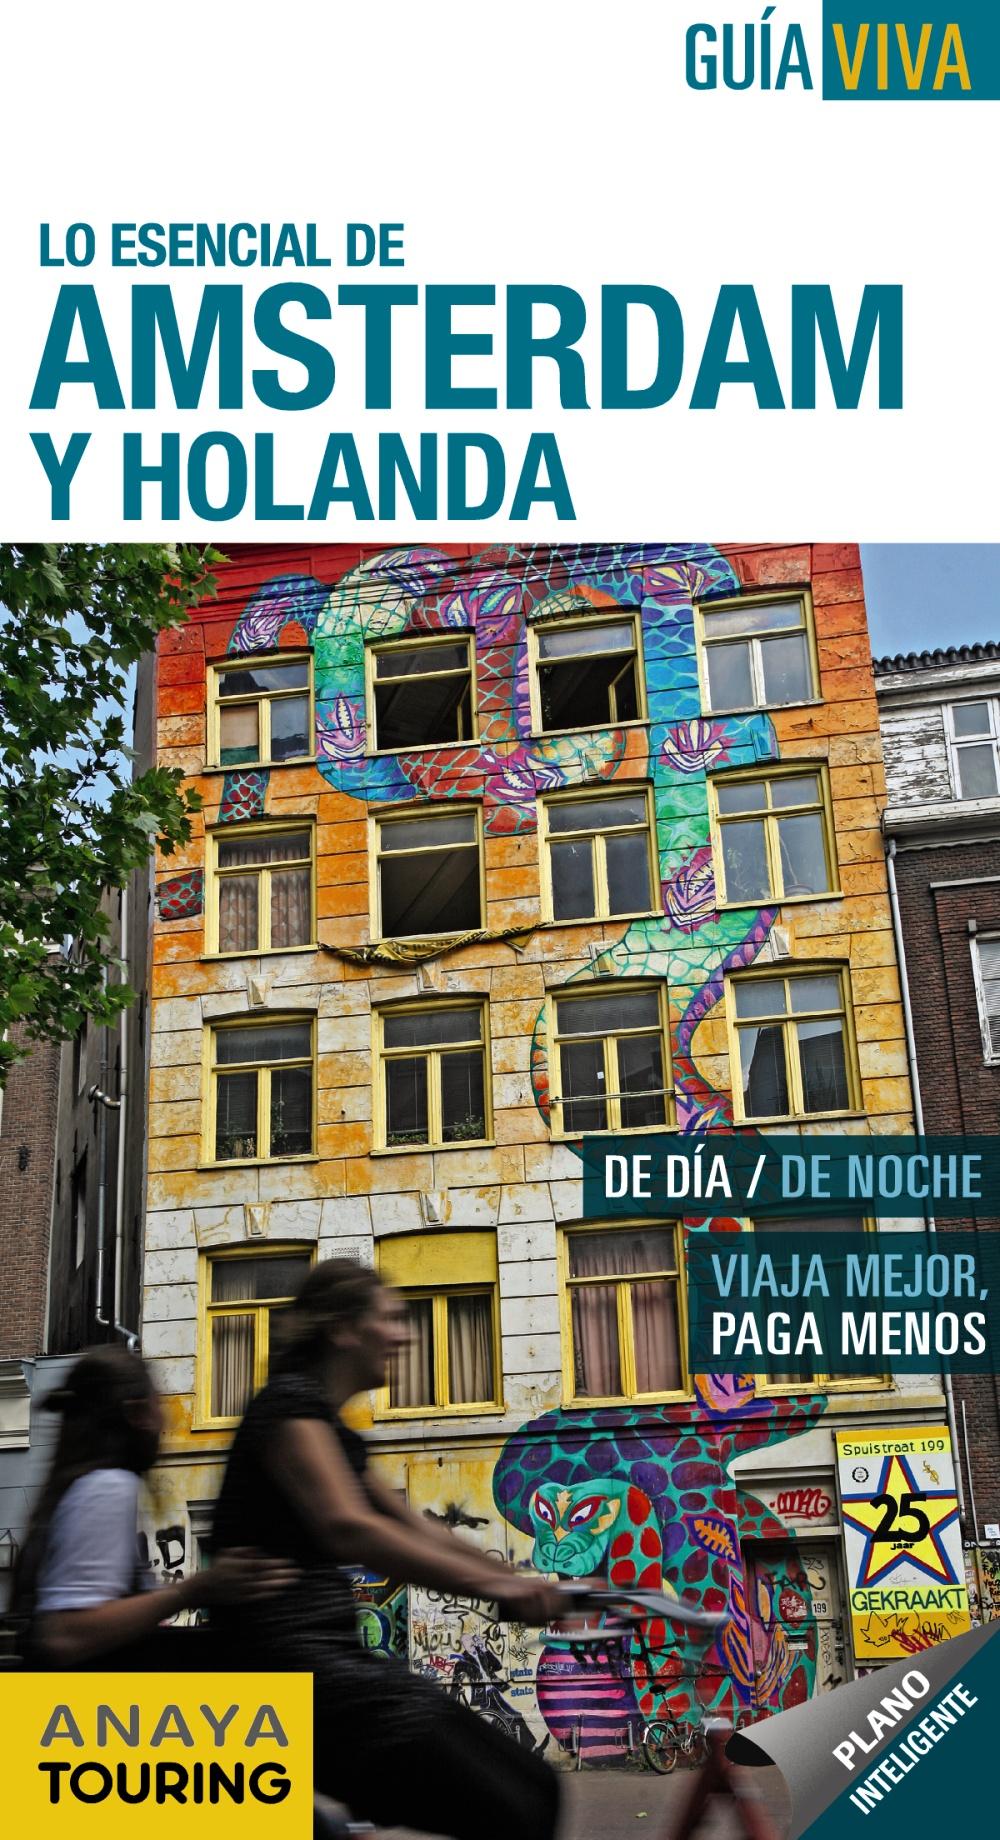 Foto Lo esencial de amsterdam y holanda 2012 guia viva anaya touring (en papel) foto 179581